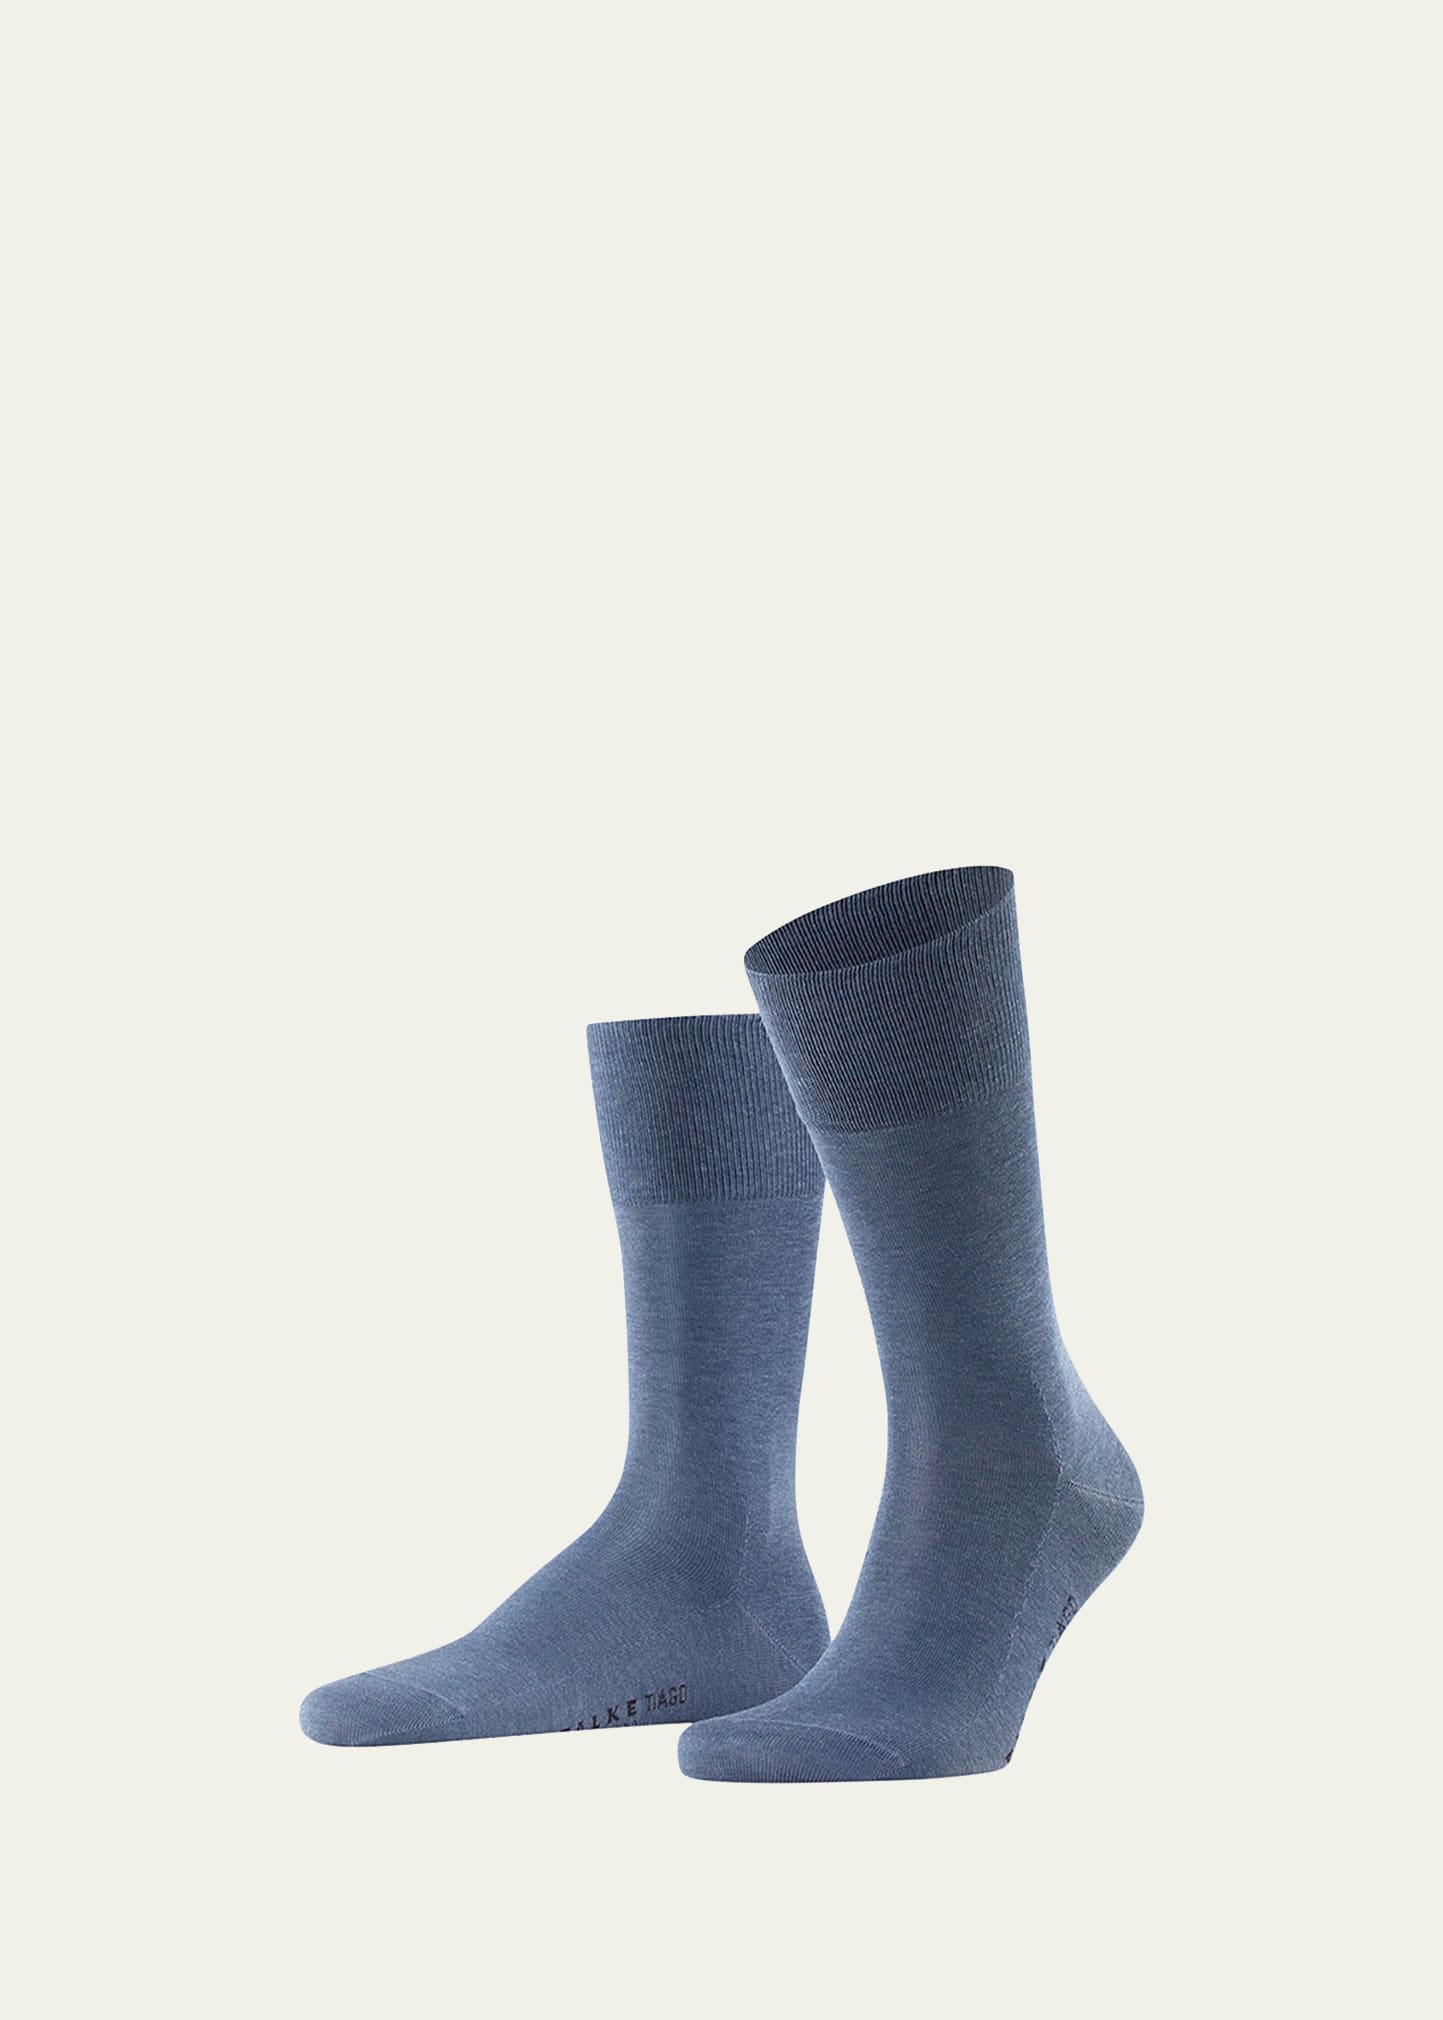 Falke Men's Tiago Knit Mid-calf Socks In Jean